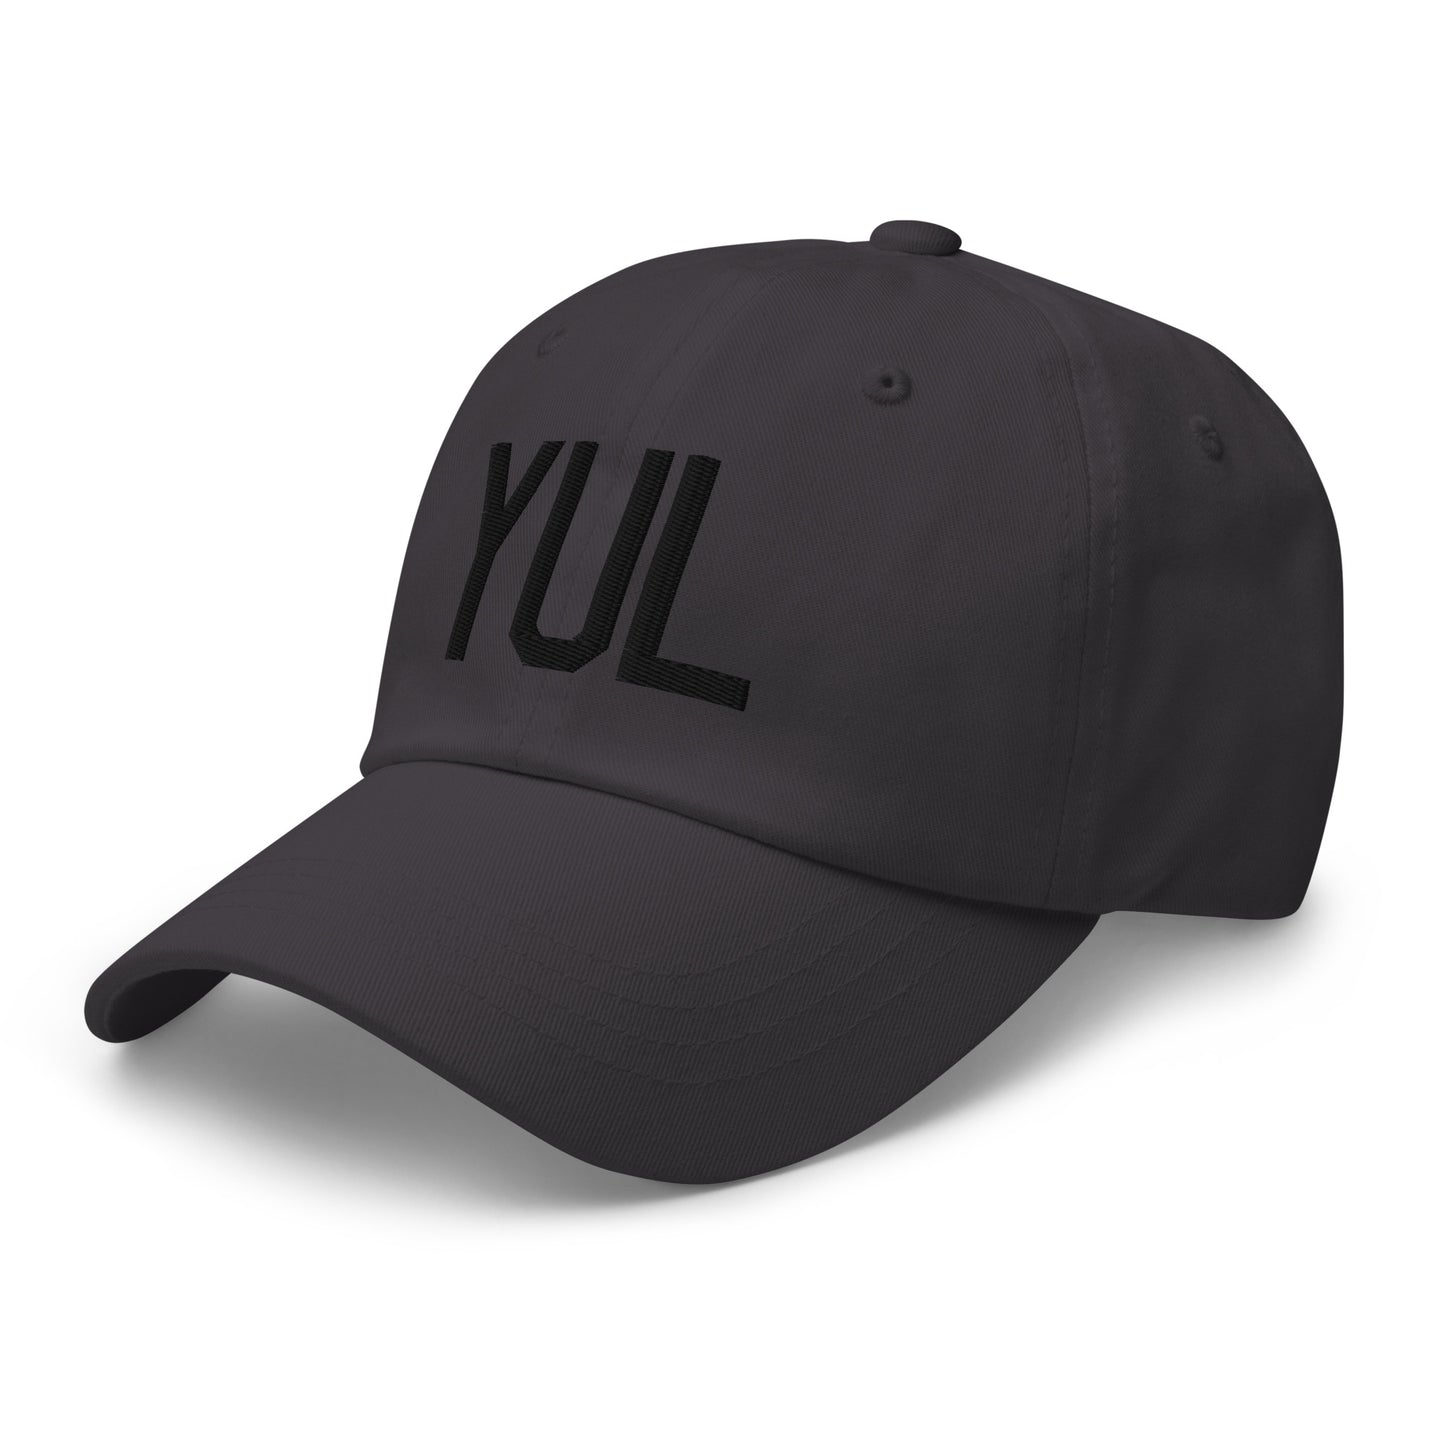 Airport Code Baseball Cap - Black • YUL Montreal • YHM Designs - Image 01